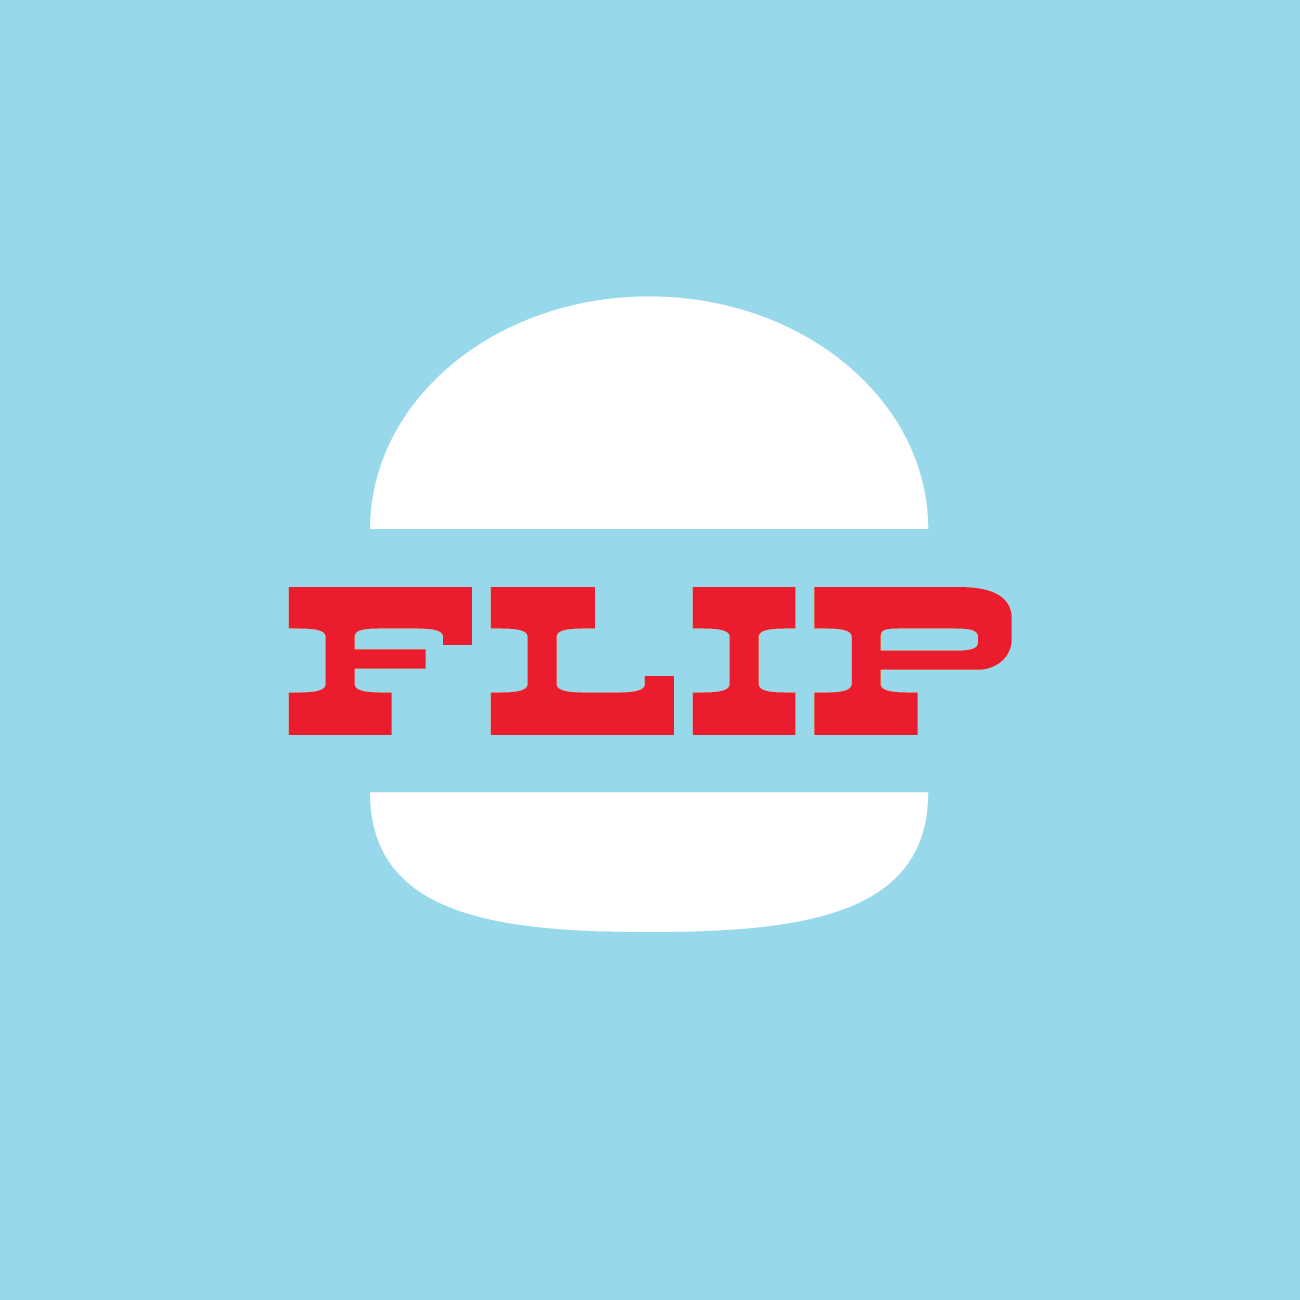 flip_logo.png